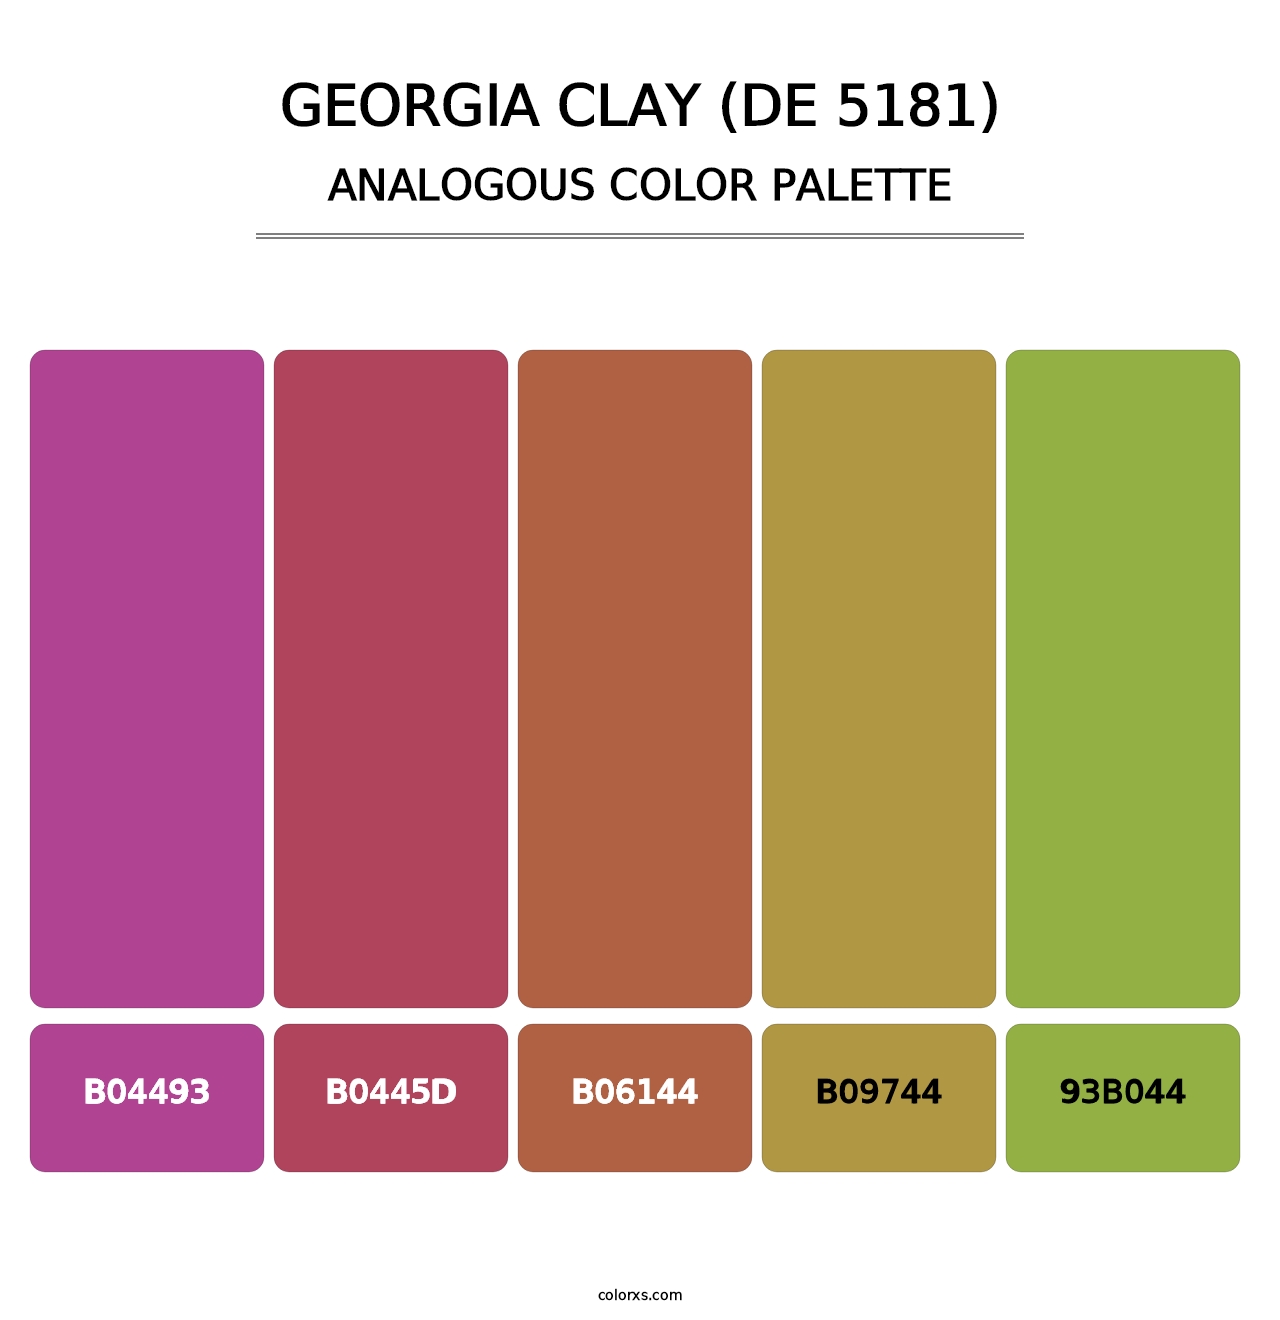 Georgia Clay (DE 5181) - Analogous Color Palette